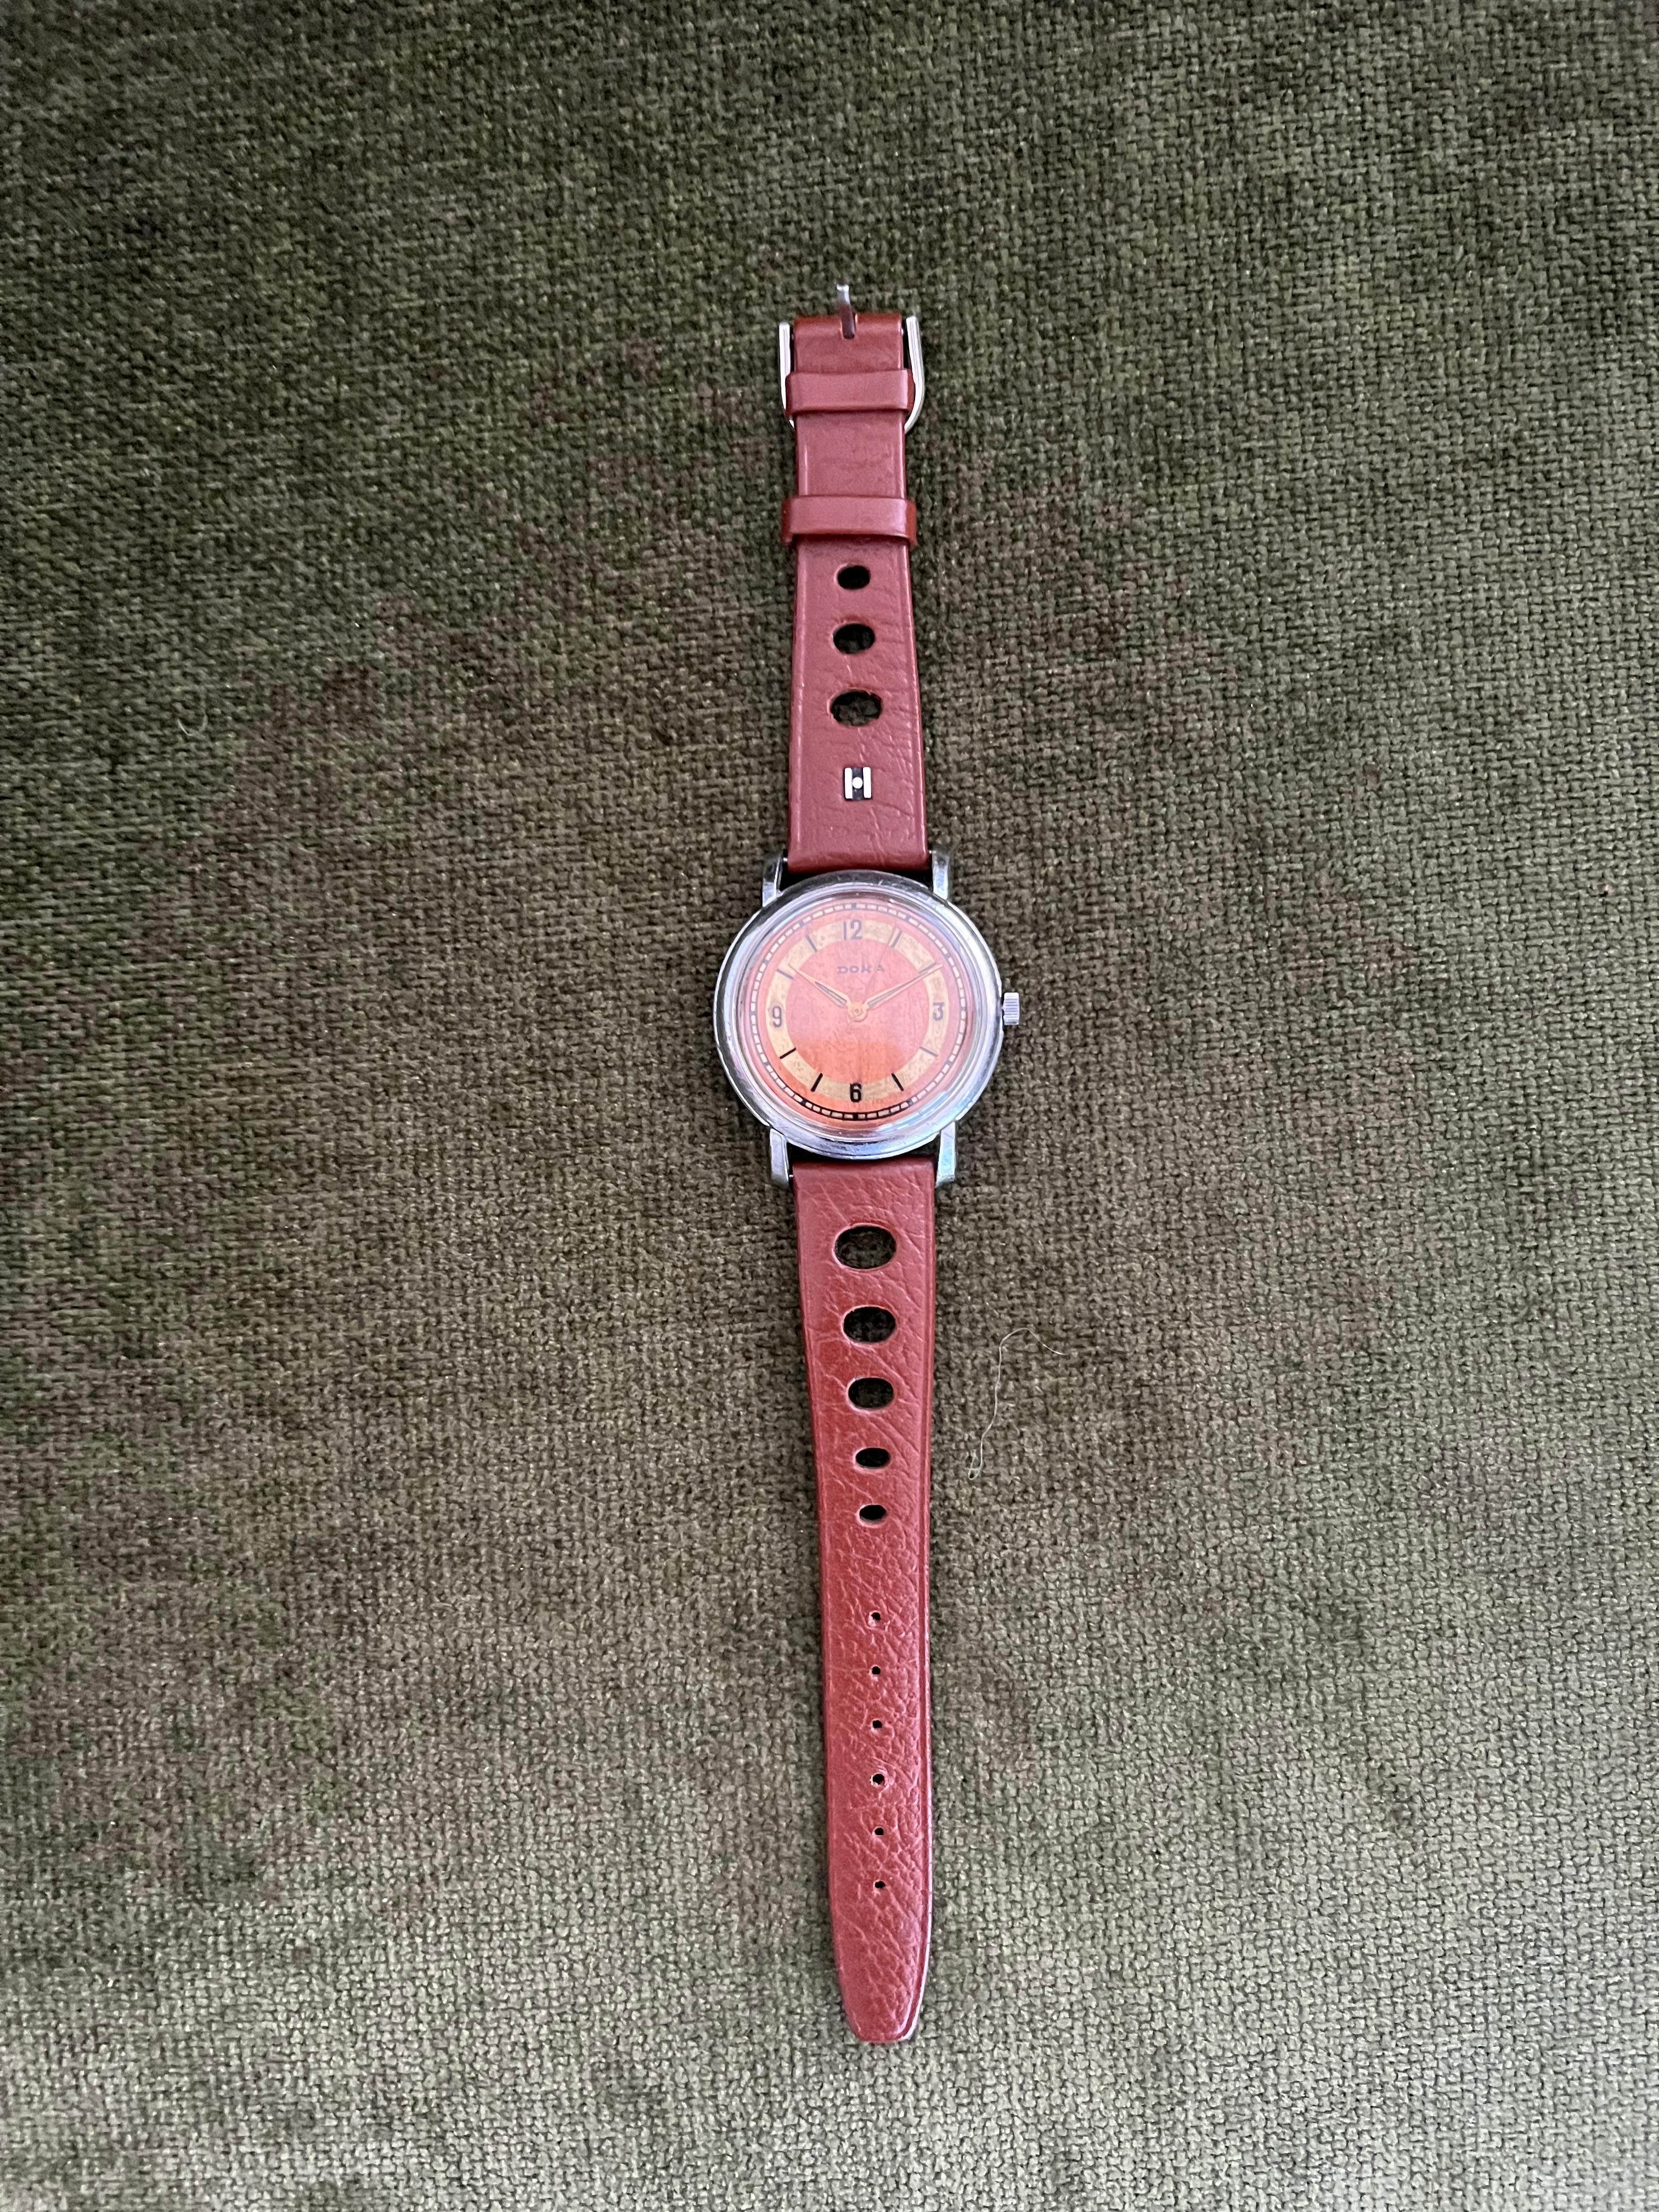 1950's doxa watch